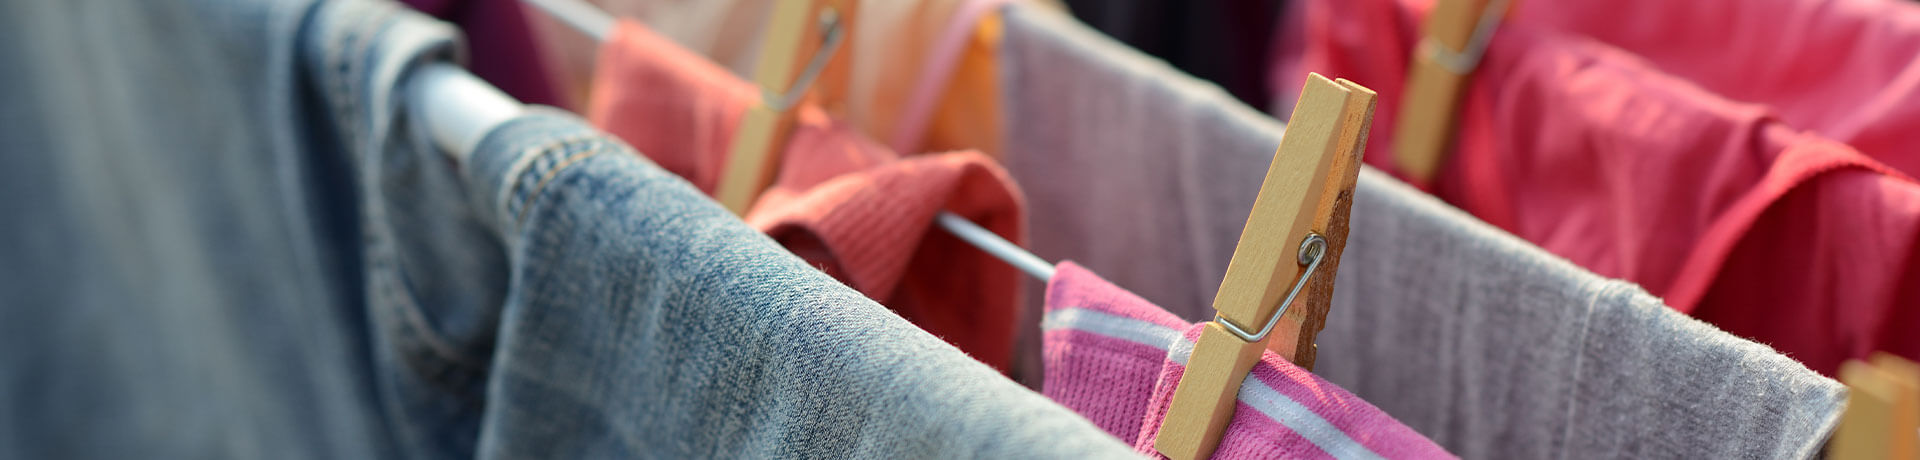 Handtücher zum Trocknen auf Wäscheständer Haushaltshilfe Wittenberge